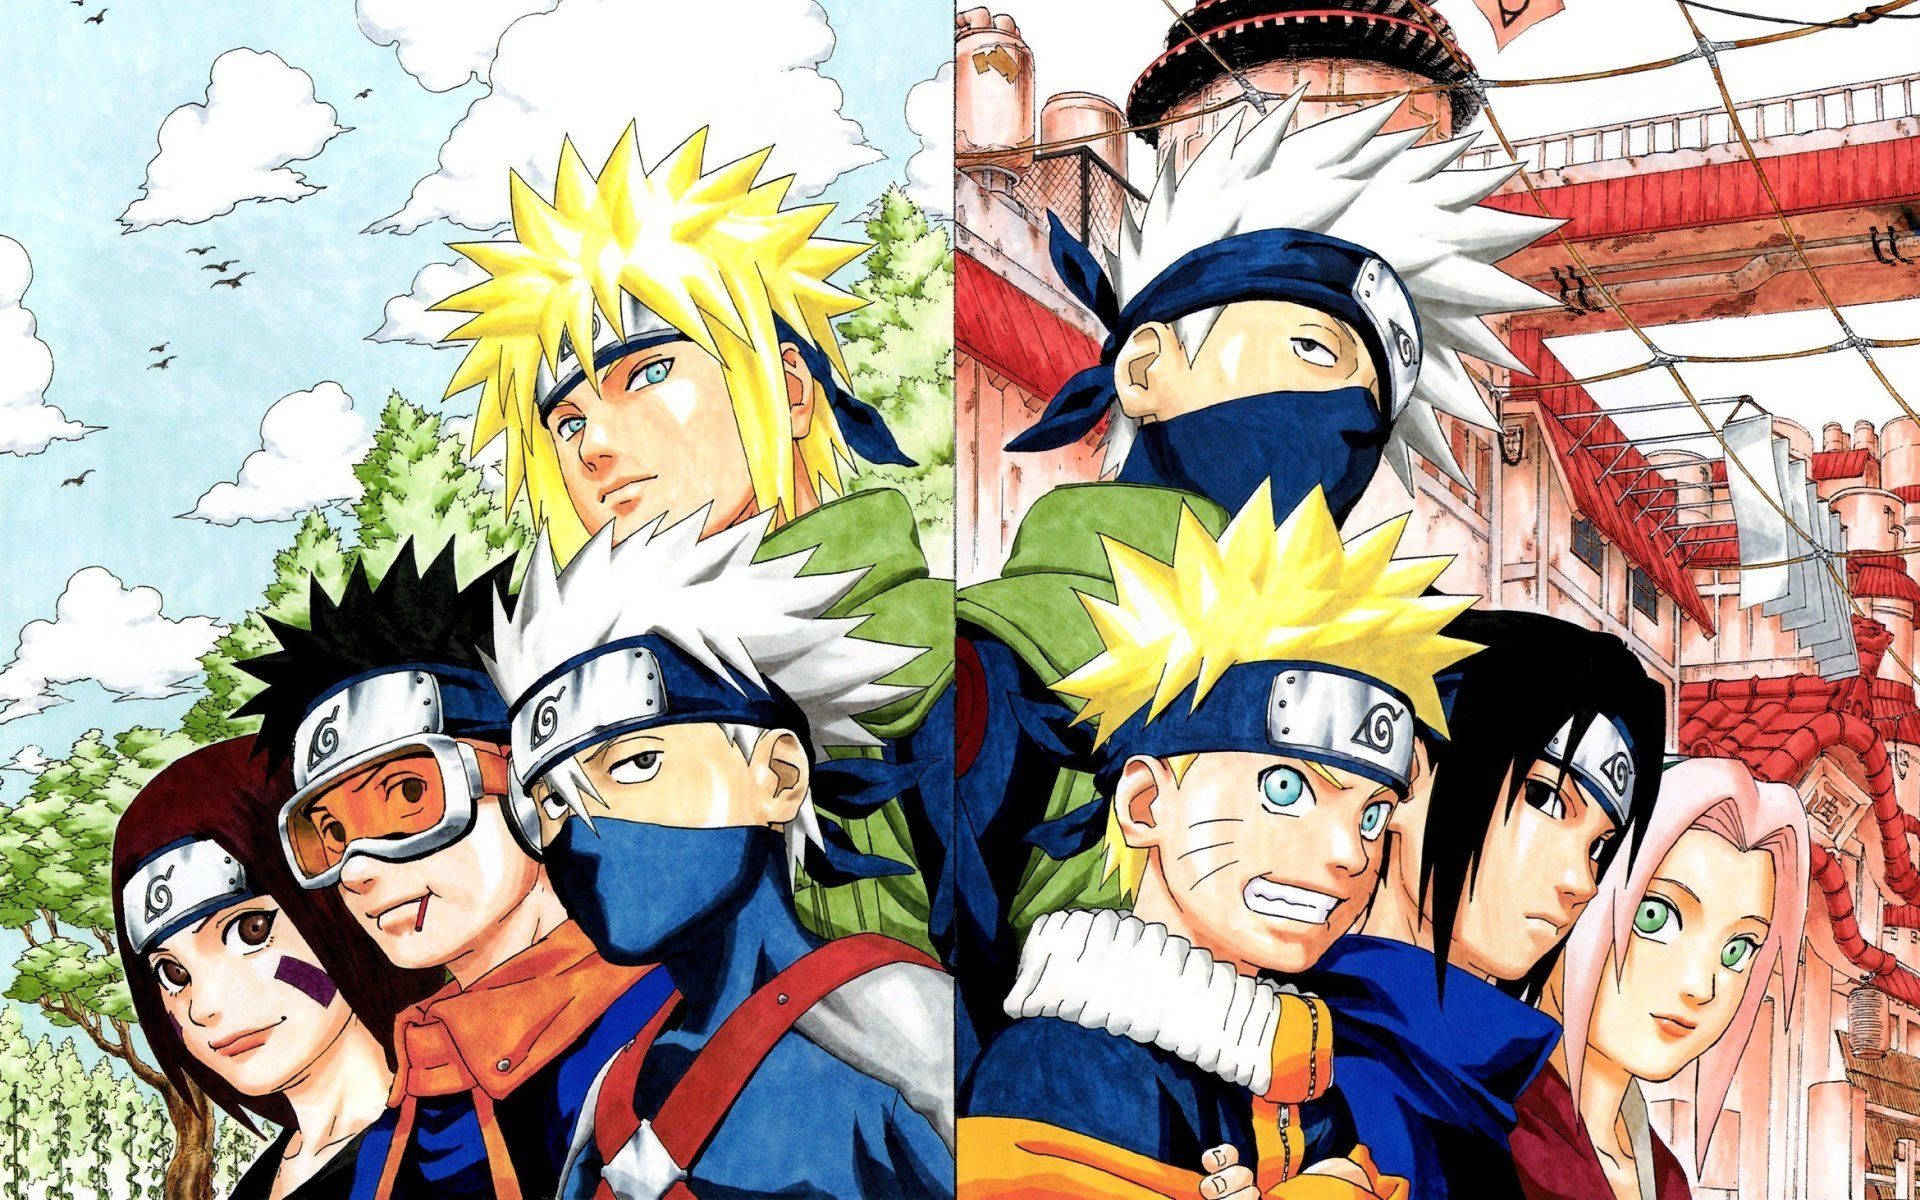 Cool Naruto Backgrounds: Những hình nền phong cách Naruto sẽ giúp cho điện thoại của bạn trở nên nổi bật và sang trọng hơn bao giờ hết. Hãy lựa chọn những hình nền được thiết kế đẹp mắt để tạo ra sự độc đáo và sự khác biệt cho chiếc điện thoại của mình.